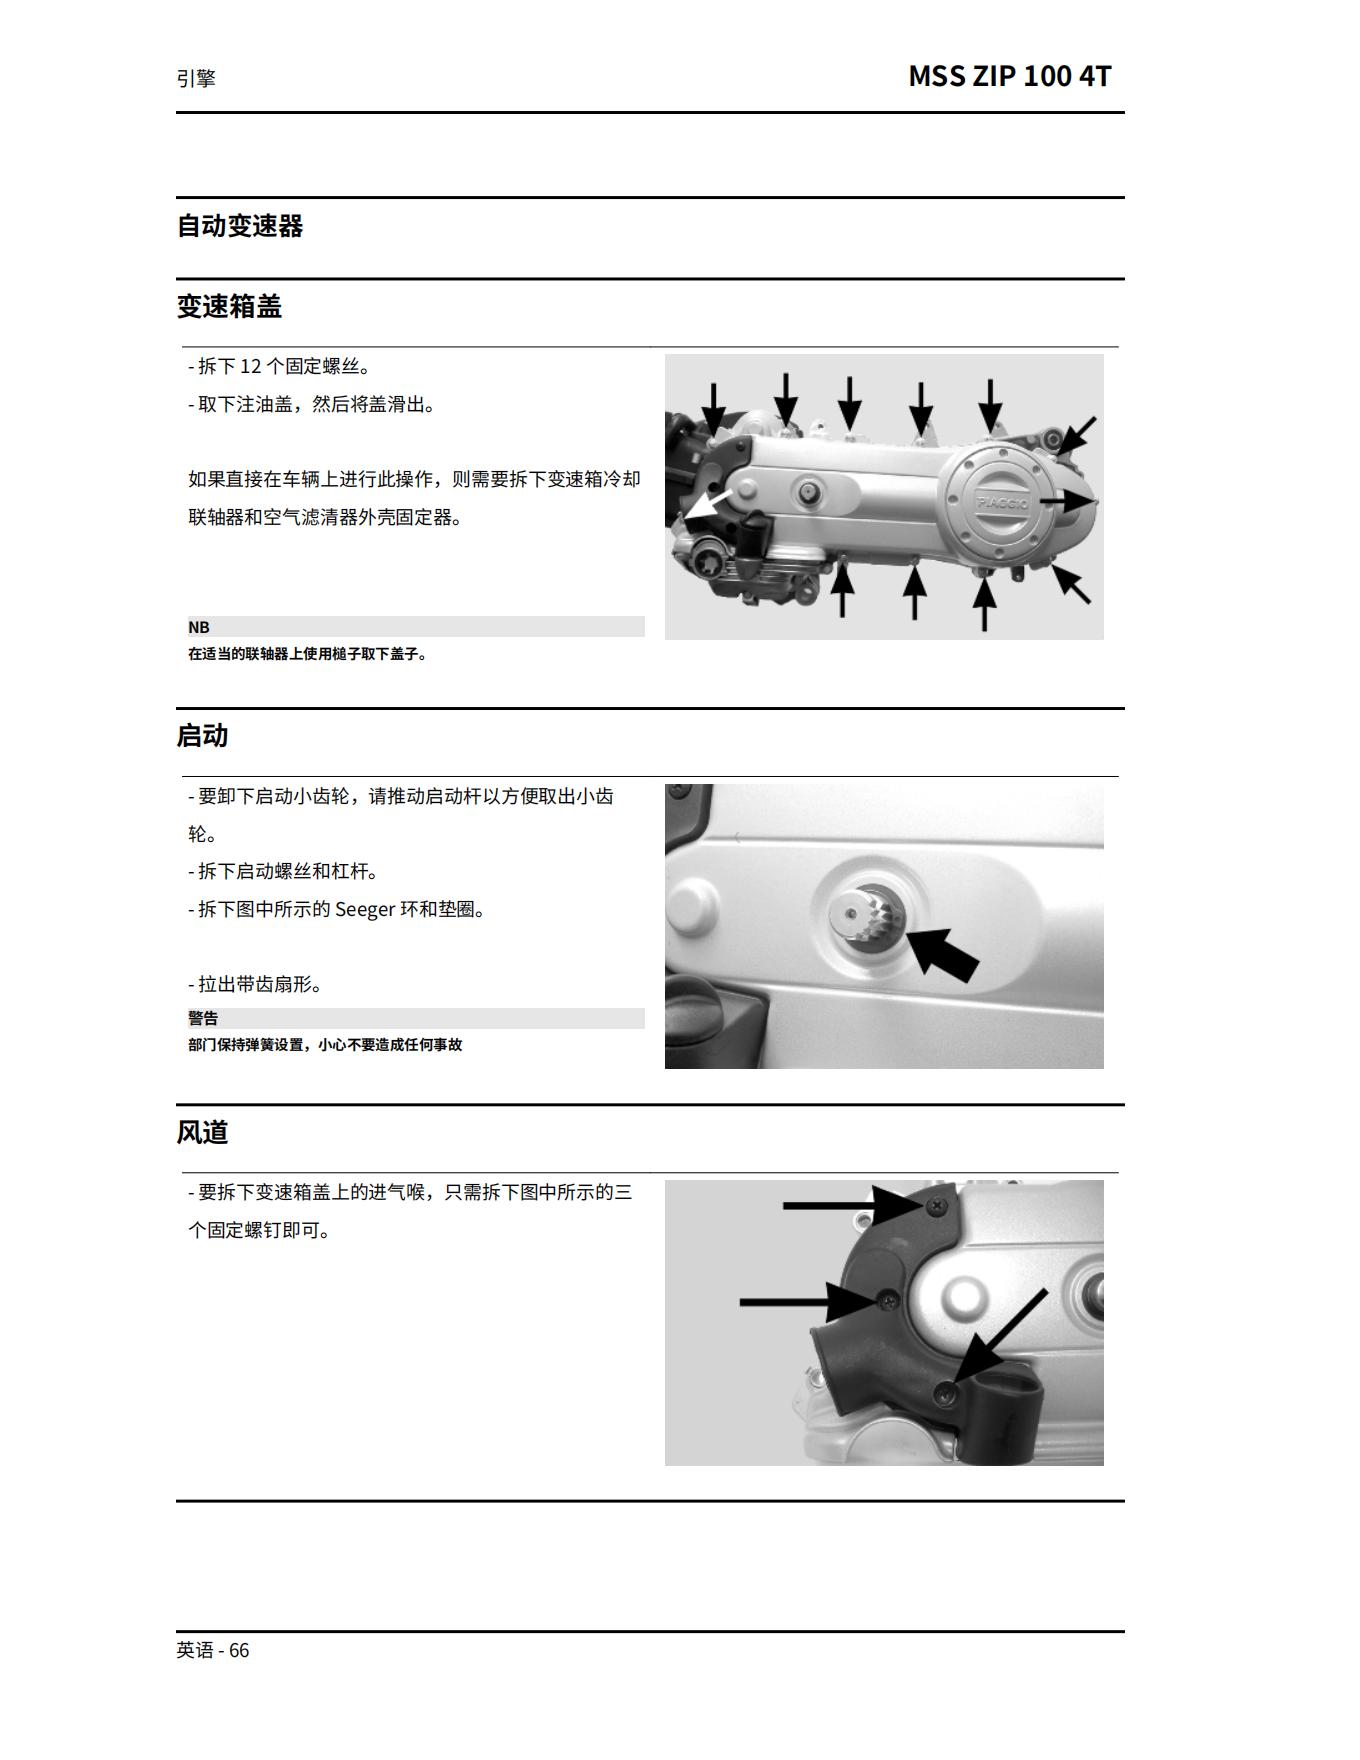 简体中文2007年比亚乔FLY125FLY150维修手册插图2